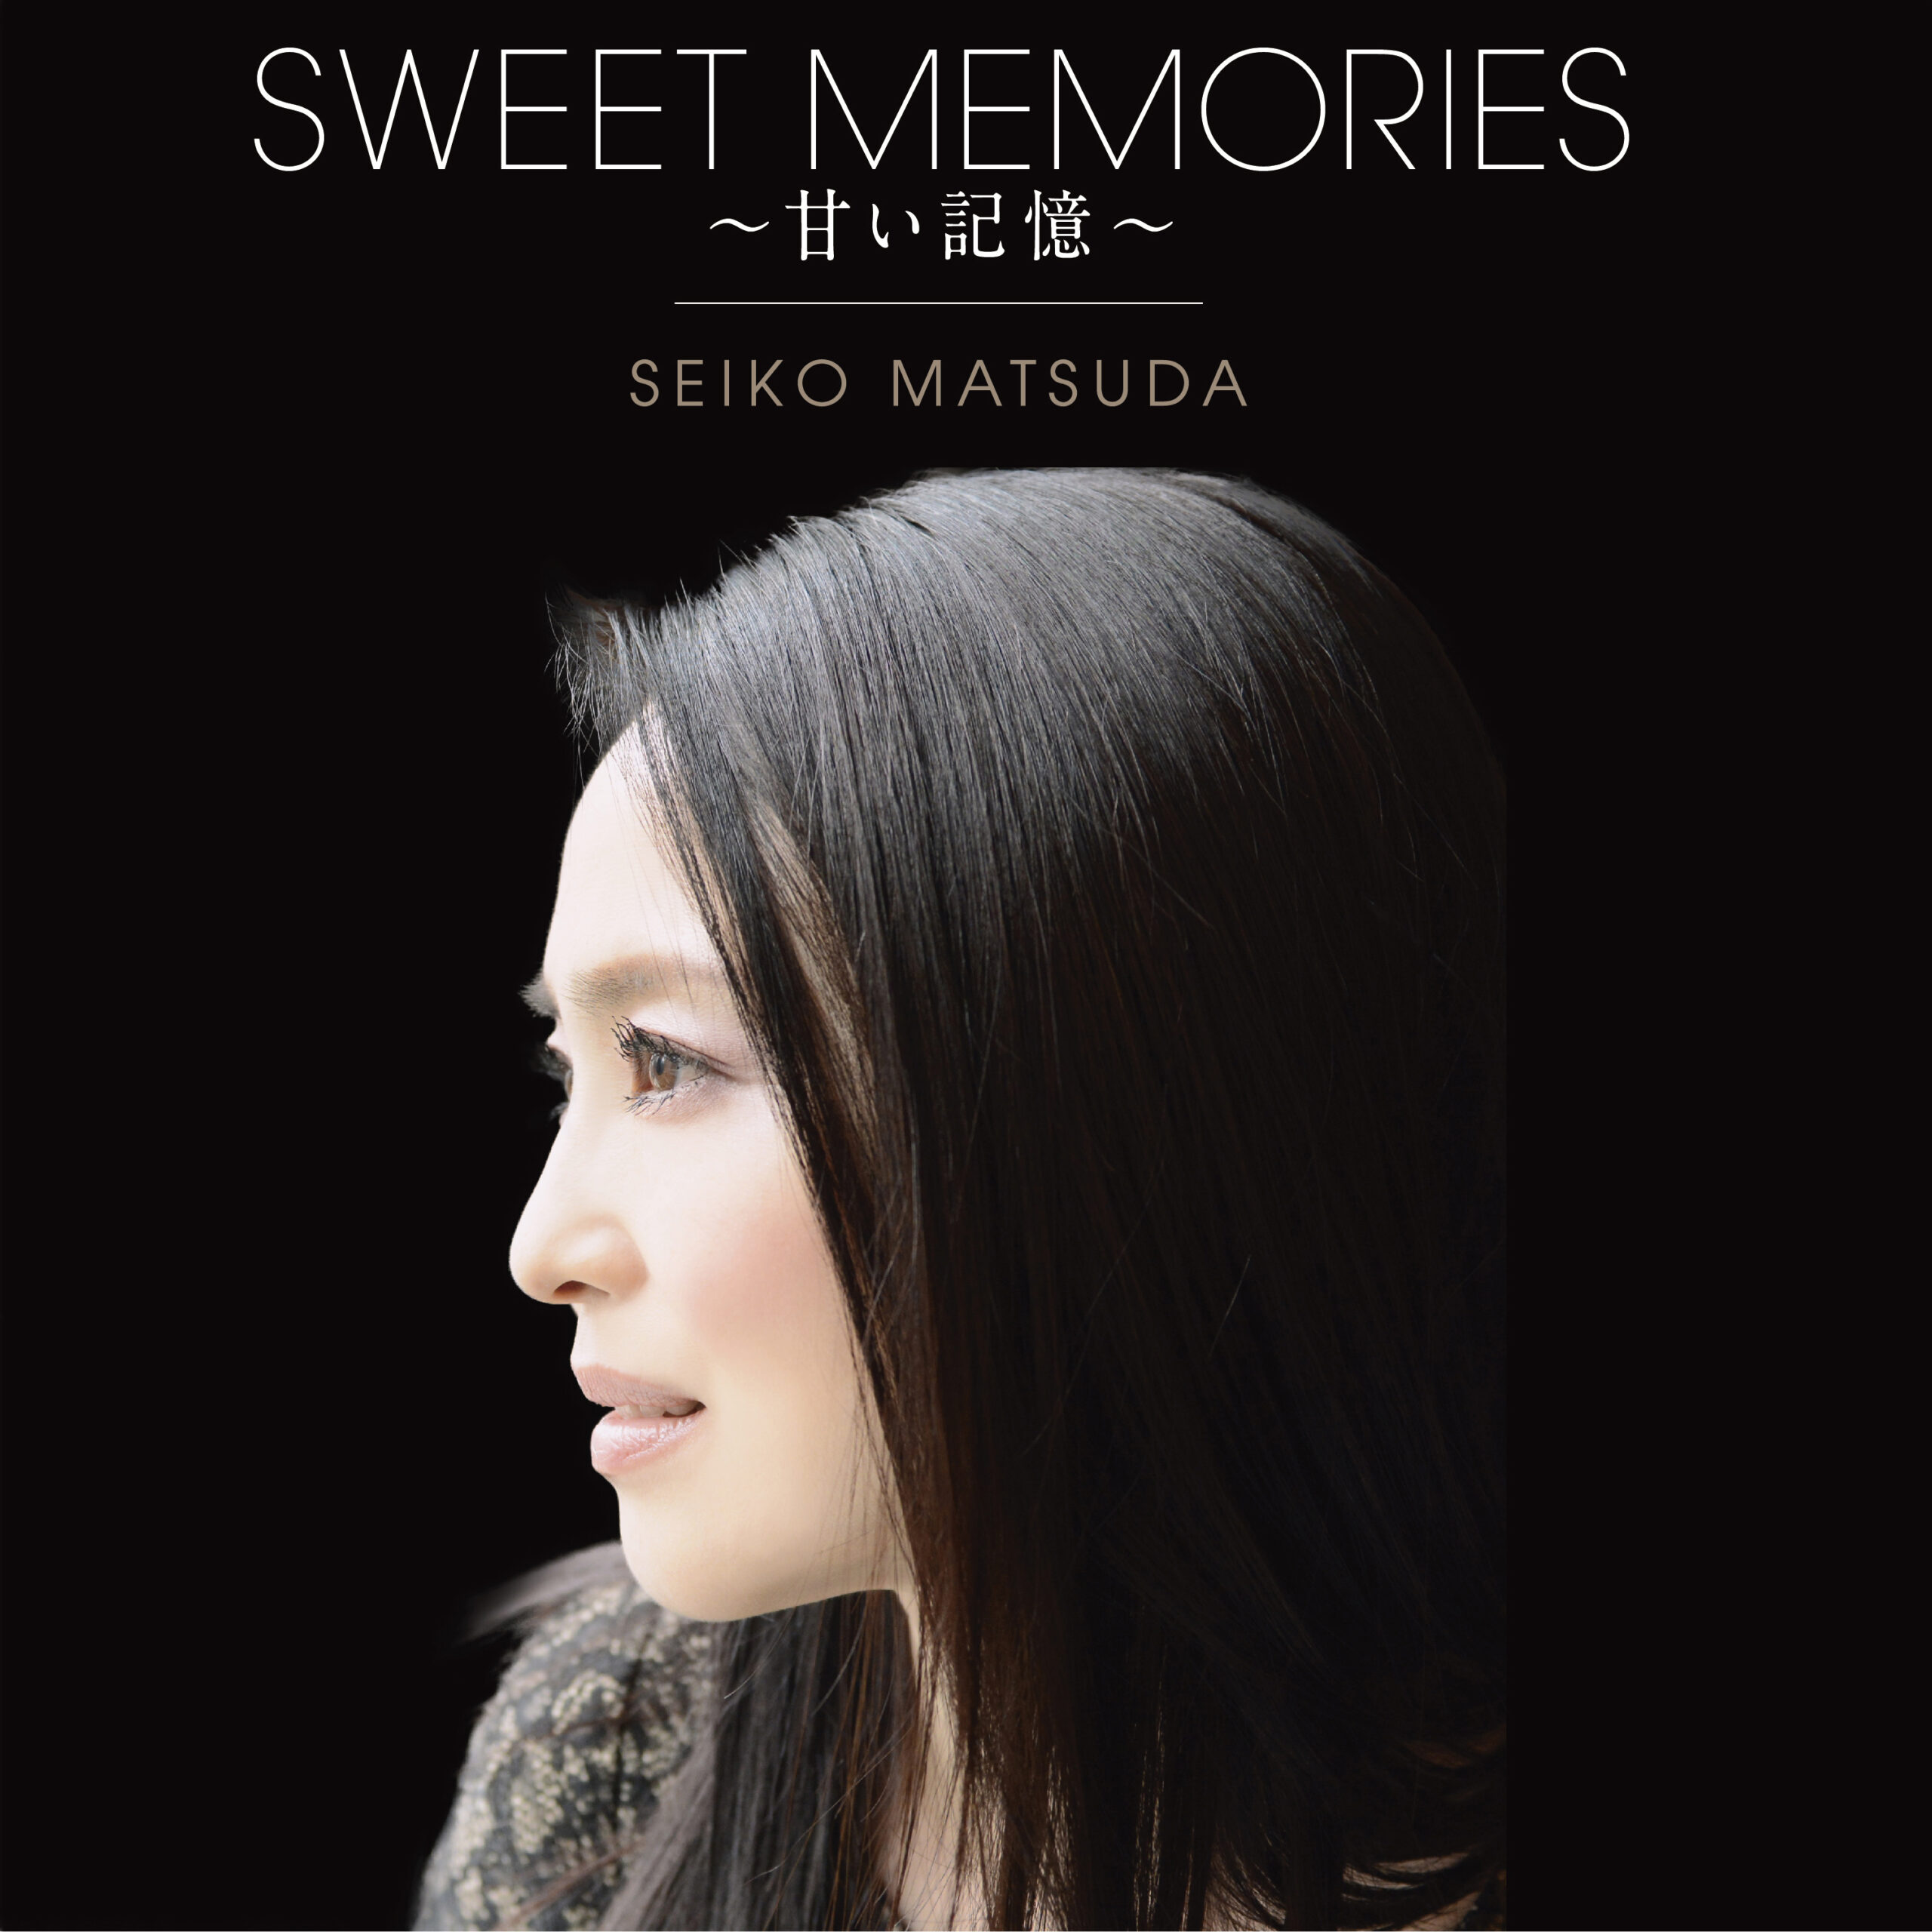 名曲「SWEET MEMORIES」幻の全編日本語バージョンが再録音され、本日 4